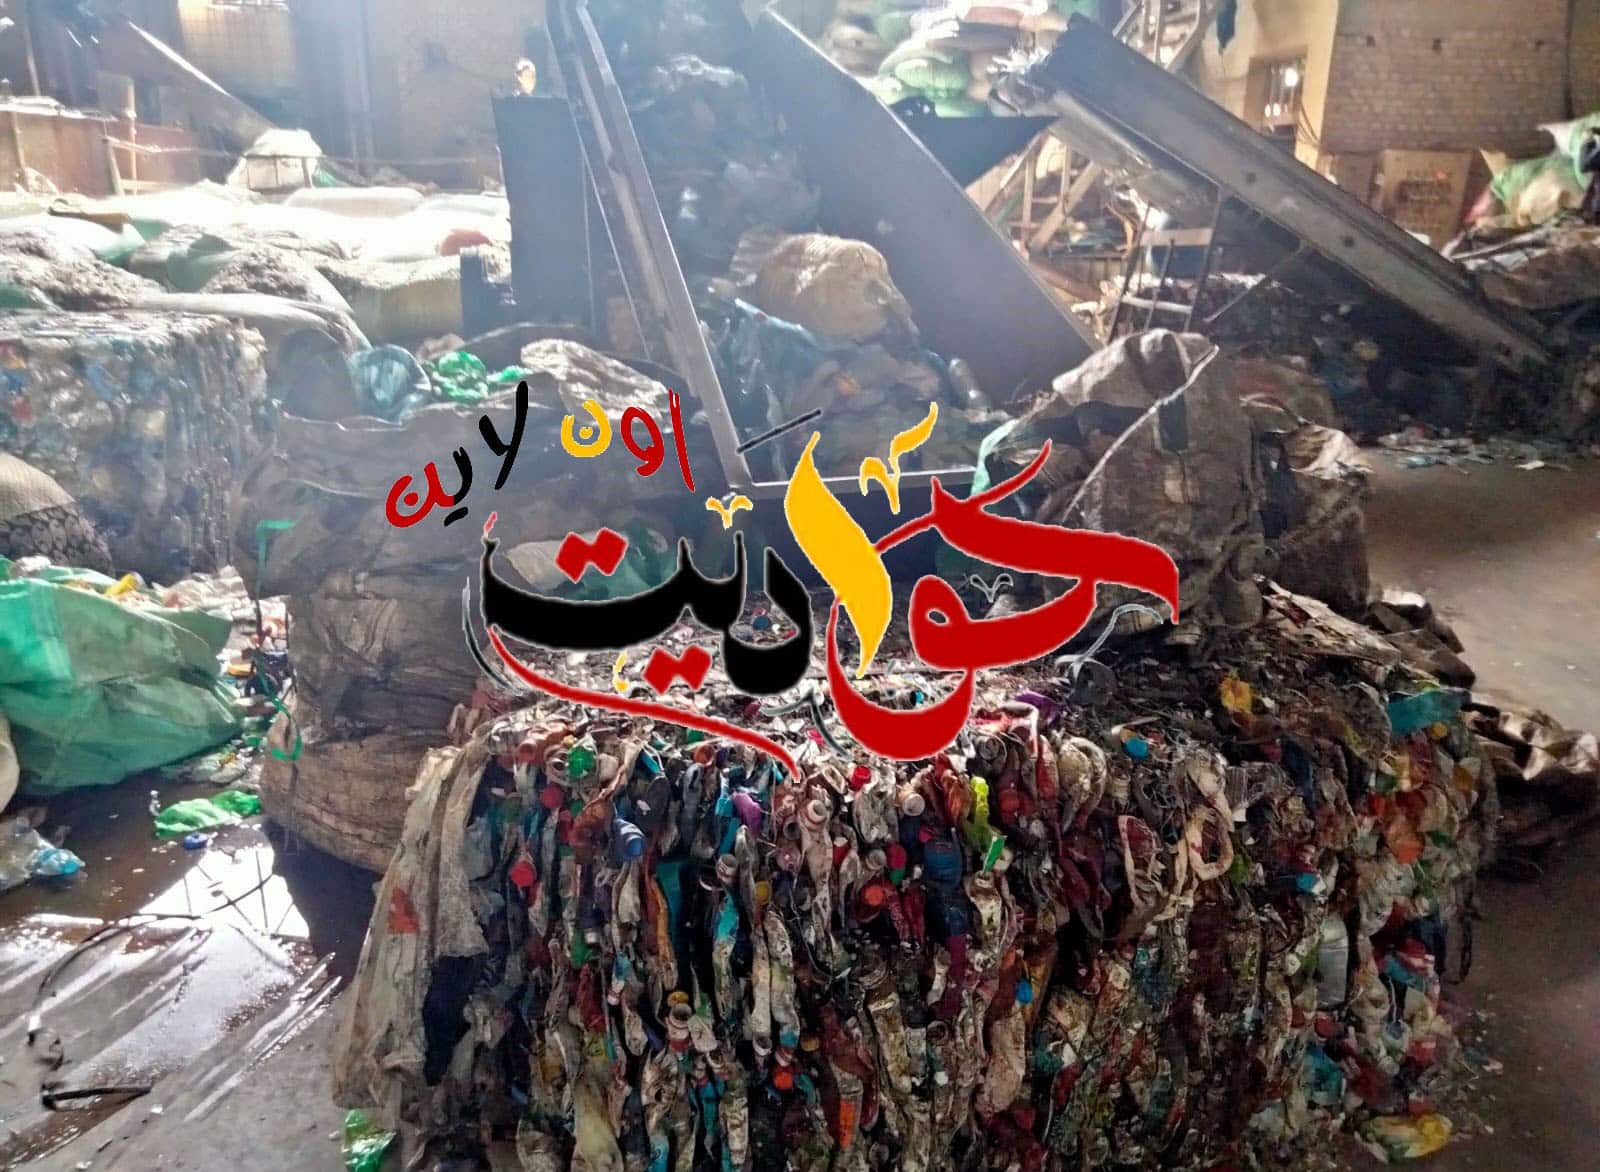 غلق وتشمع مصنع لإعادة تدوير وصناعه المنتجات البلاستيكية من المخلفات بشبرامنت فى مركز ابو النمرس